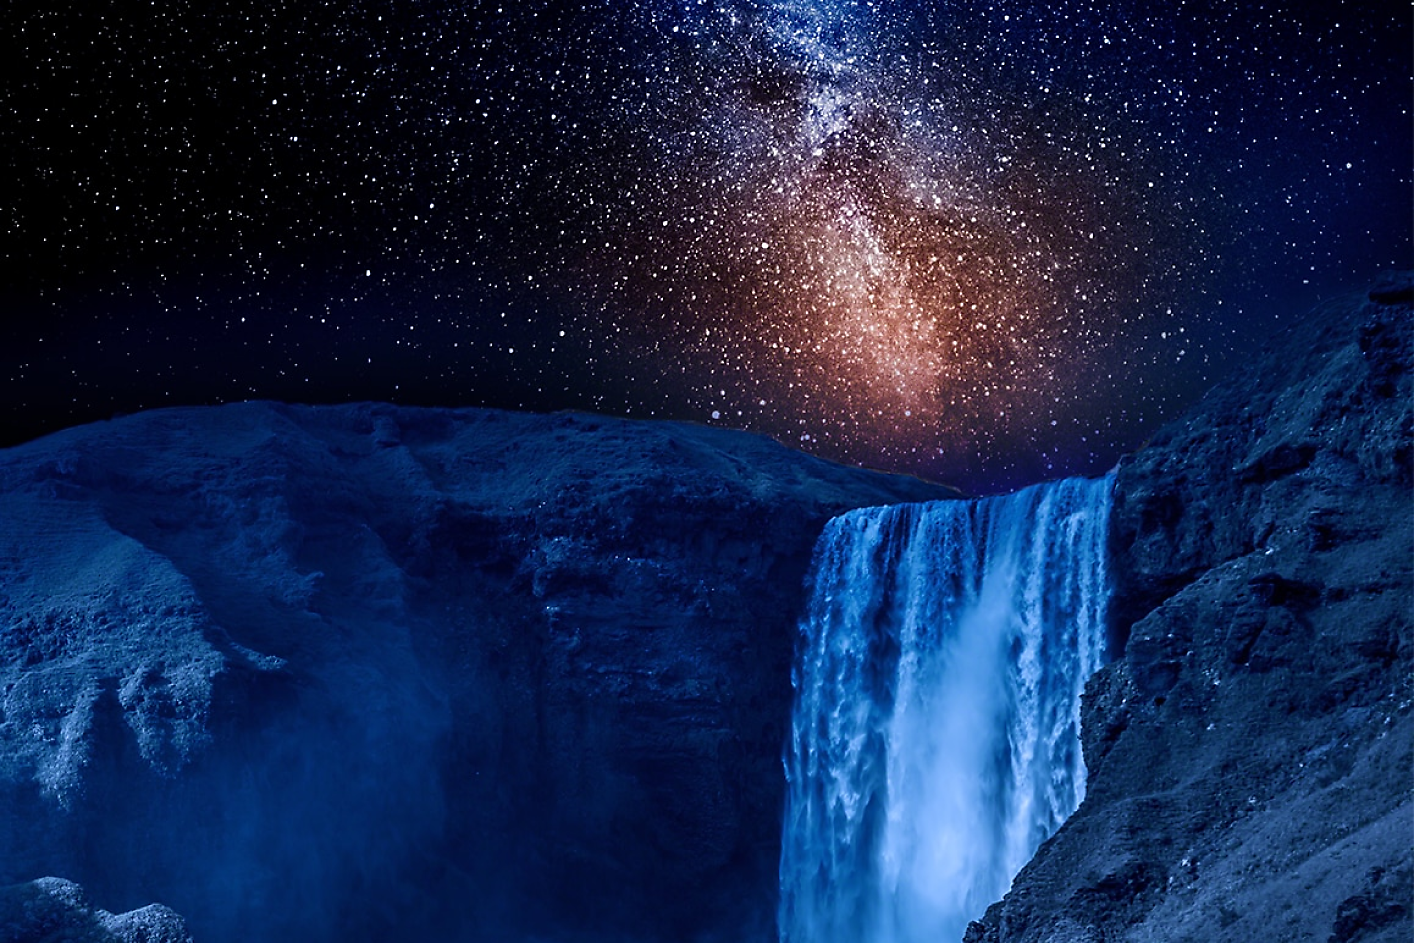 Tamnoplavi vodopad, u pozadini vidimo zvjezdano noćno nebo.